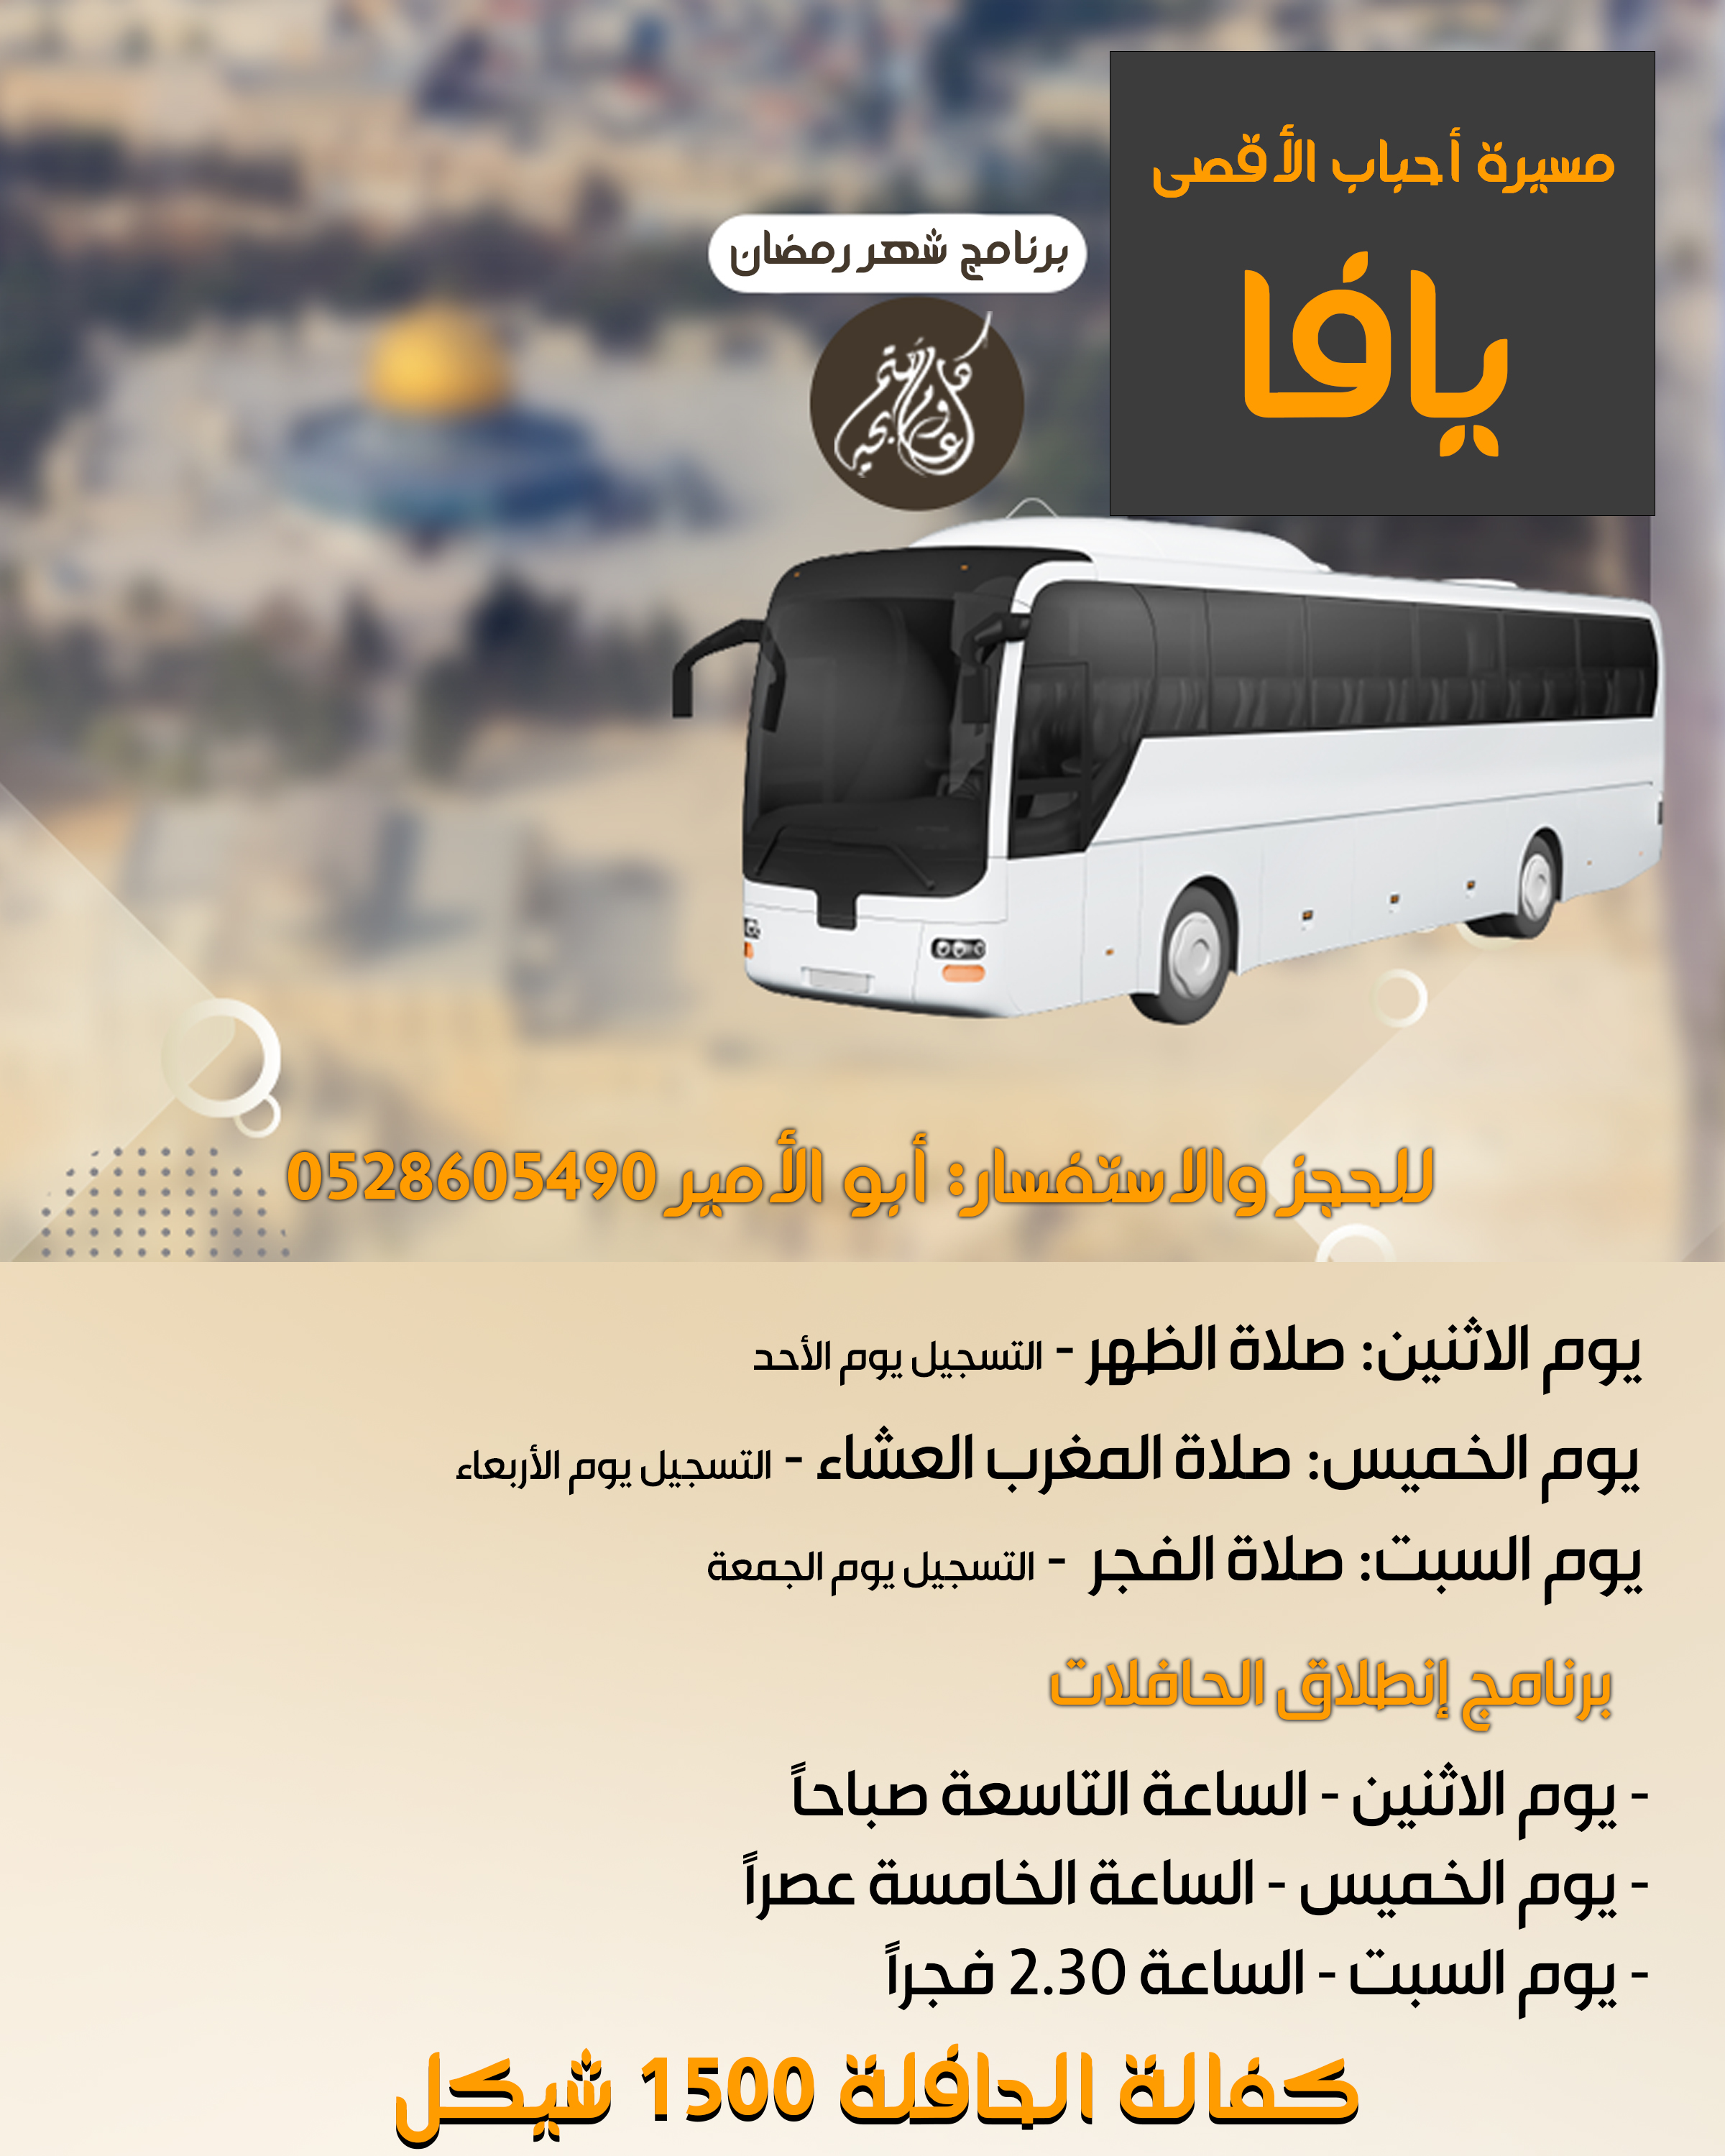  يافا: الاعلان عن برنامج حافلات الأقصى خلال شهر رمضان